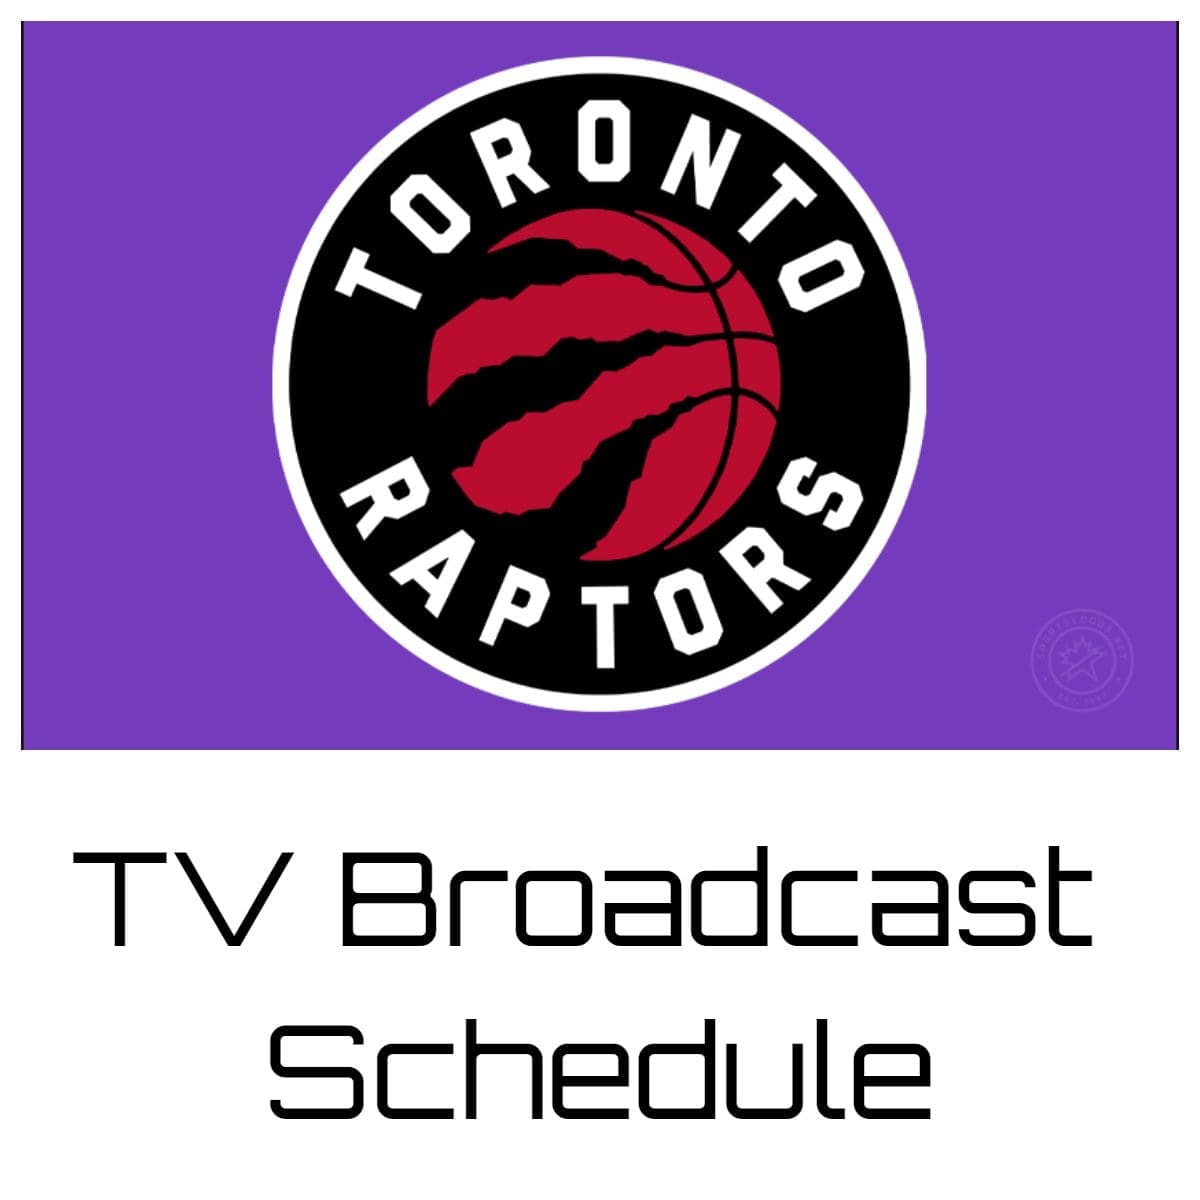 Toronto Raptors TV Broadcast Schedule